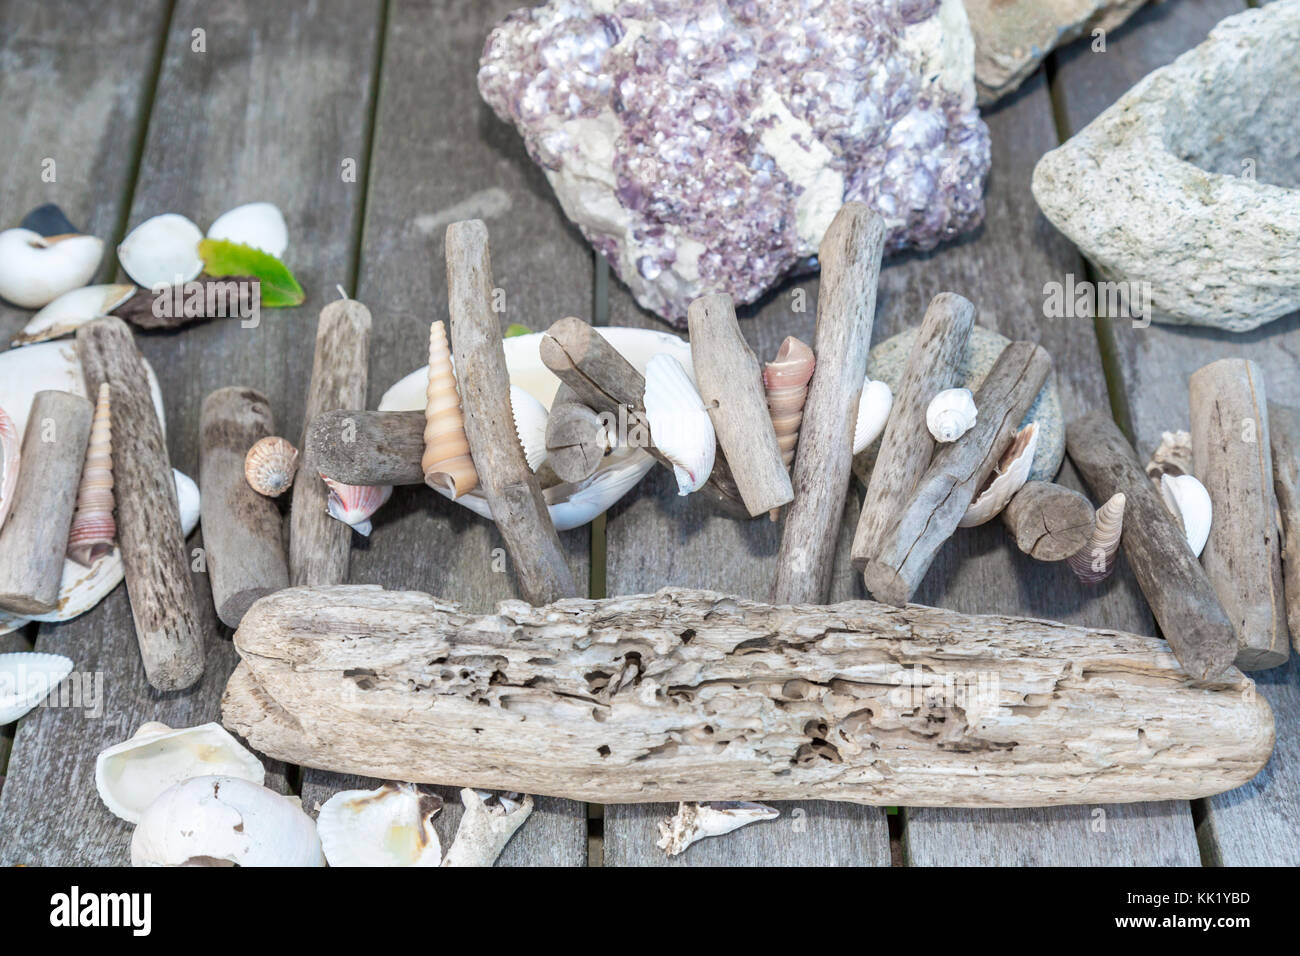 Des coquillages, des bois et des pierres dans un arrangement simple sur un dessus de table Banque D'Images